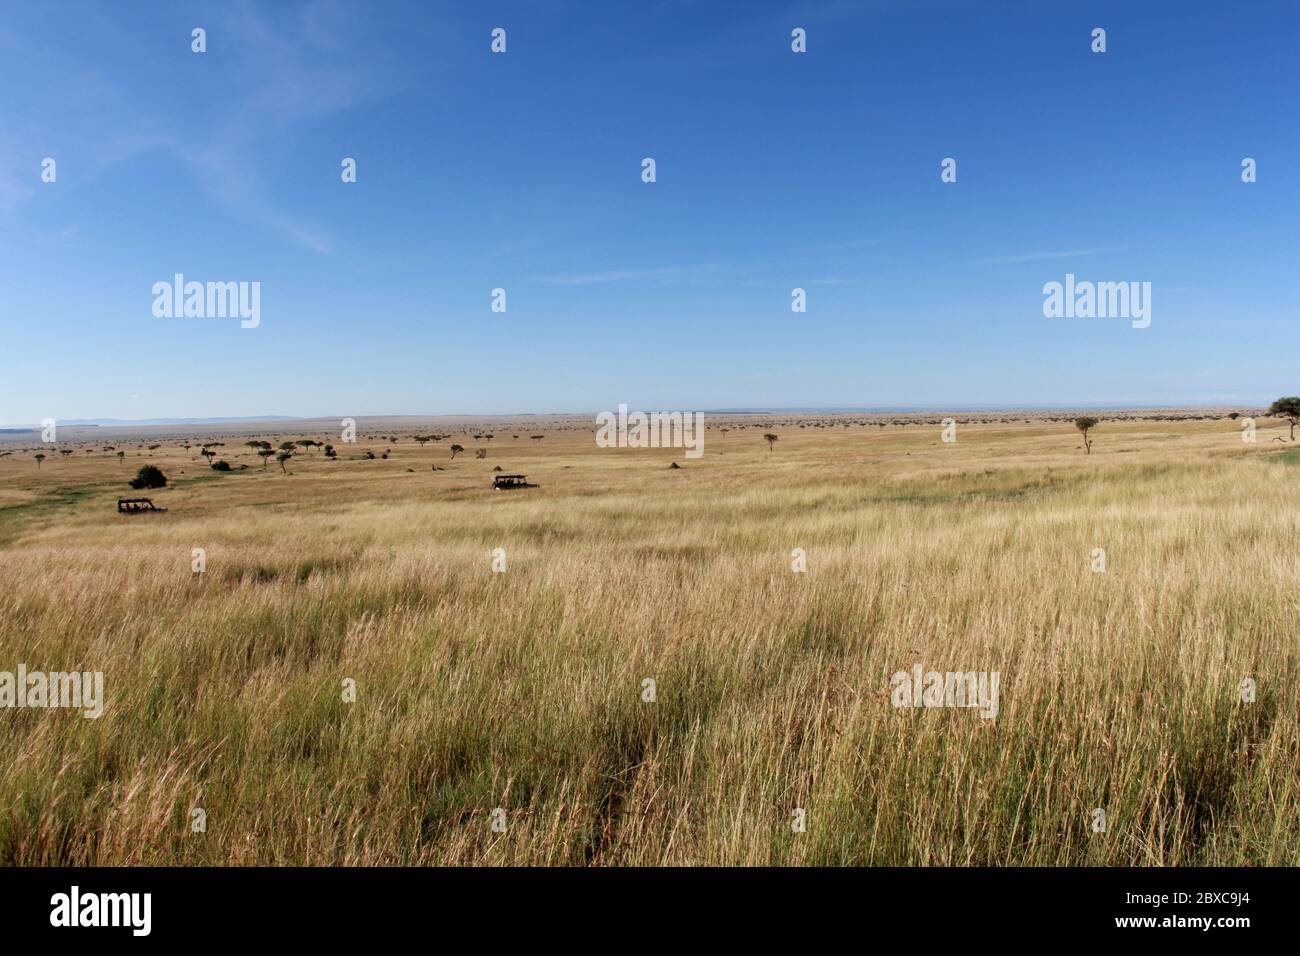 Charakteristische endlose Landschaft der kenianischen Savanne, der Masai mara. Weite Graslandschaften mit Akazien im goldenen Licht der Sonne und des blauen Himmels Stockfoto